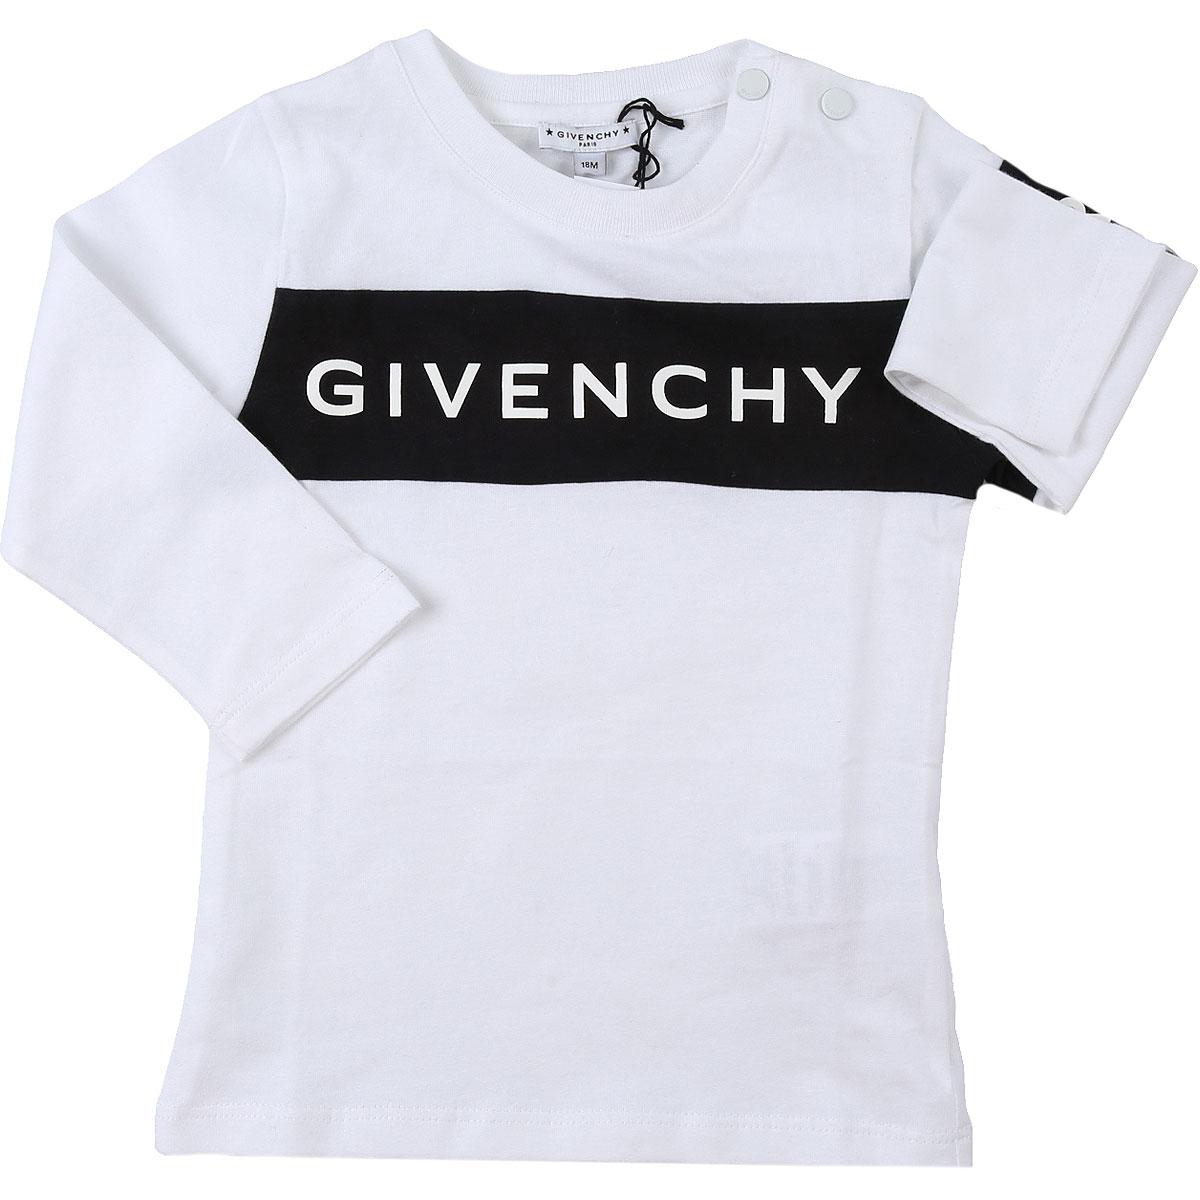 Givenchy Baby T-Shirt für Jungen Günstig im Sale, Weiss, Baumwolle, 2017, 12 M 18M 2Y 3Y 9M